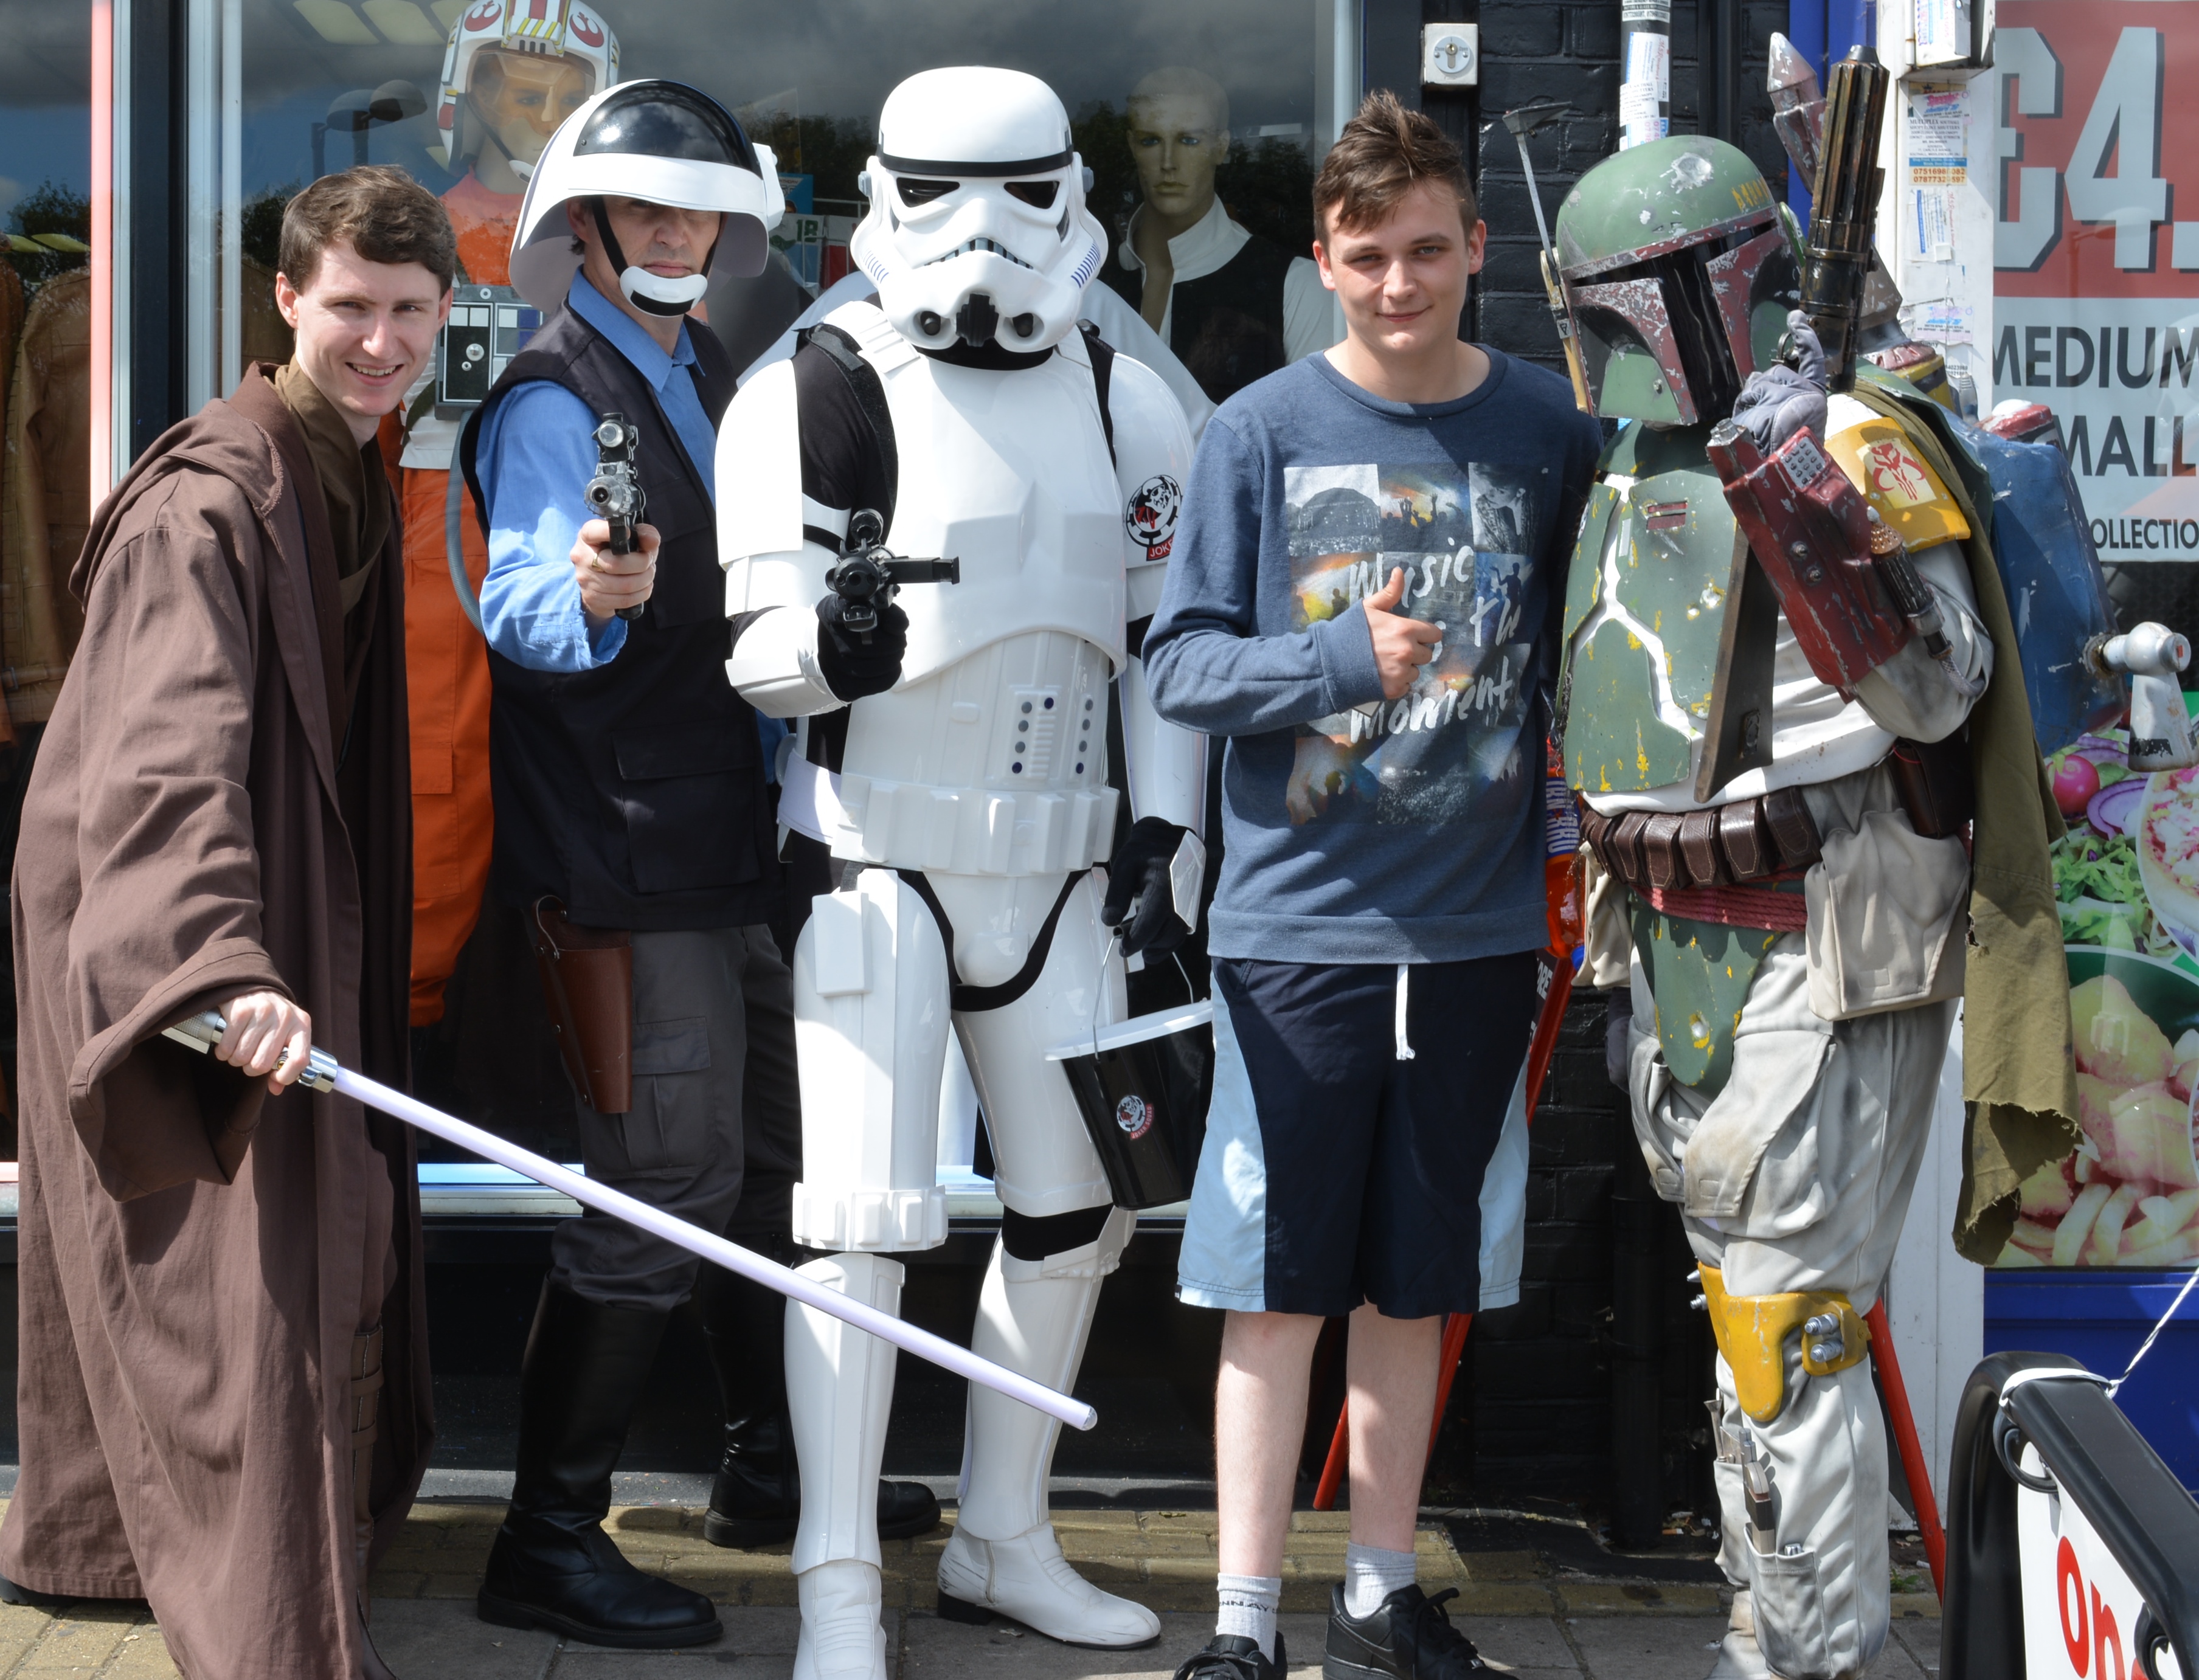 Jedi-Robe Star Wars Fun Day